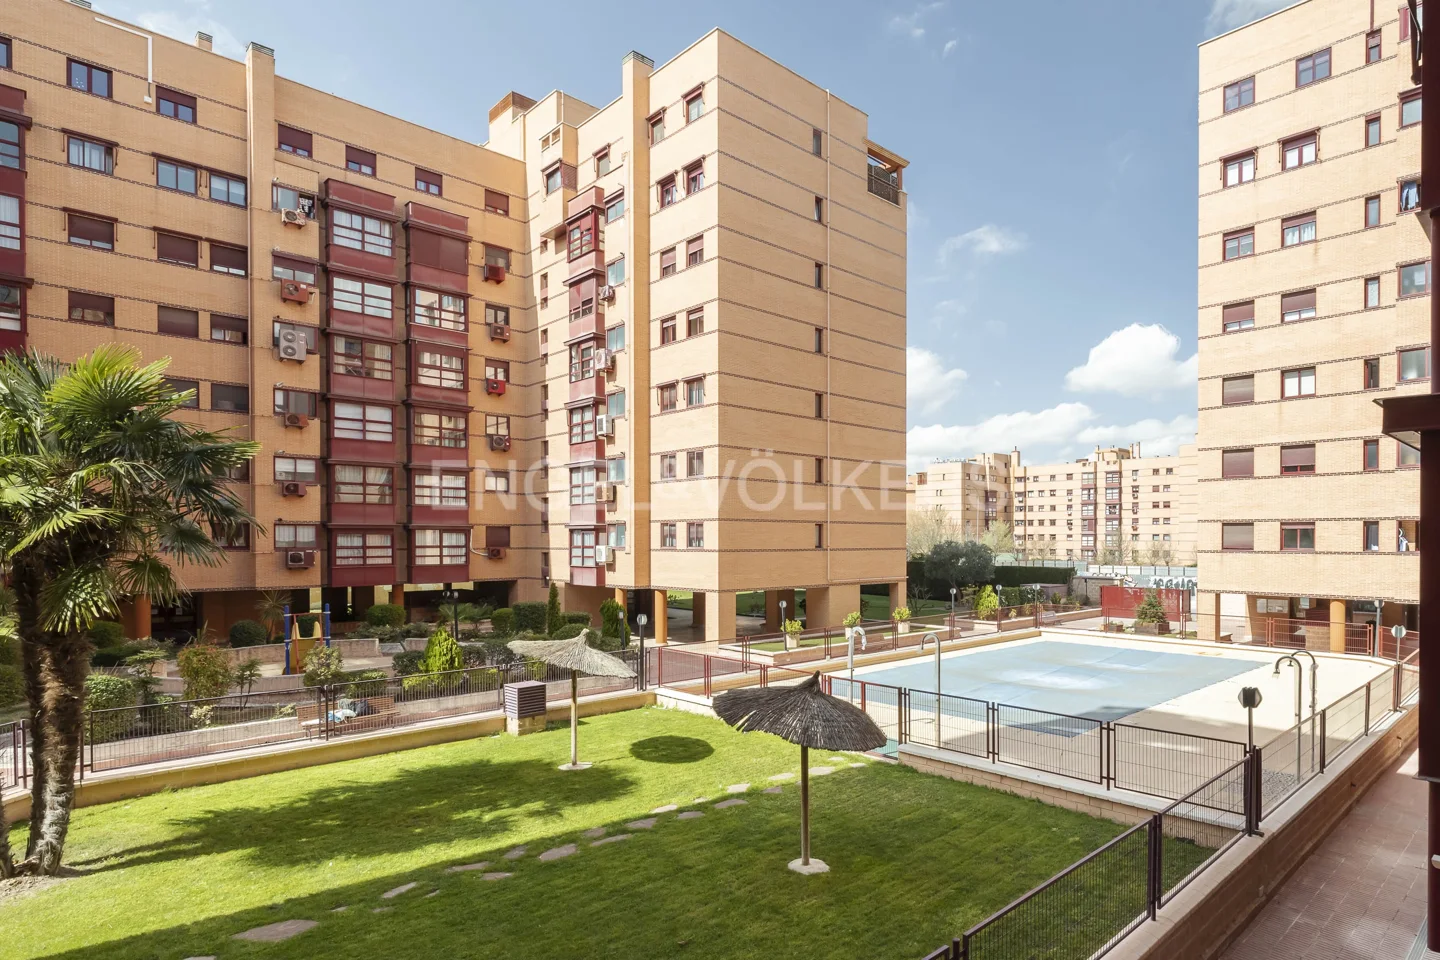 Amplia vivienda de 3 dormitorios en urb. privada en Simancas